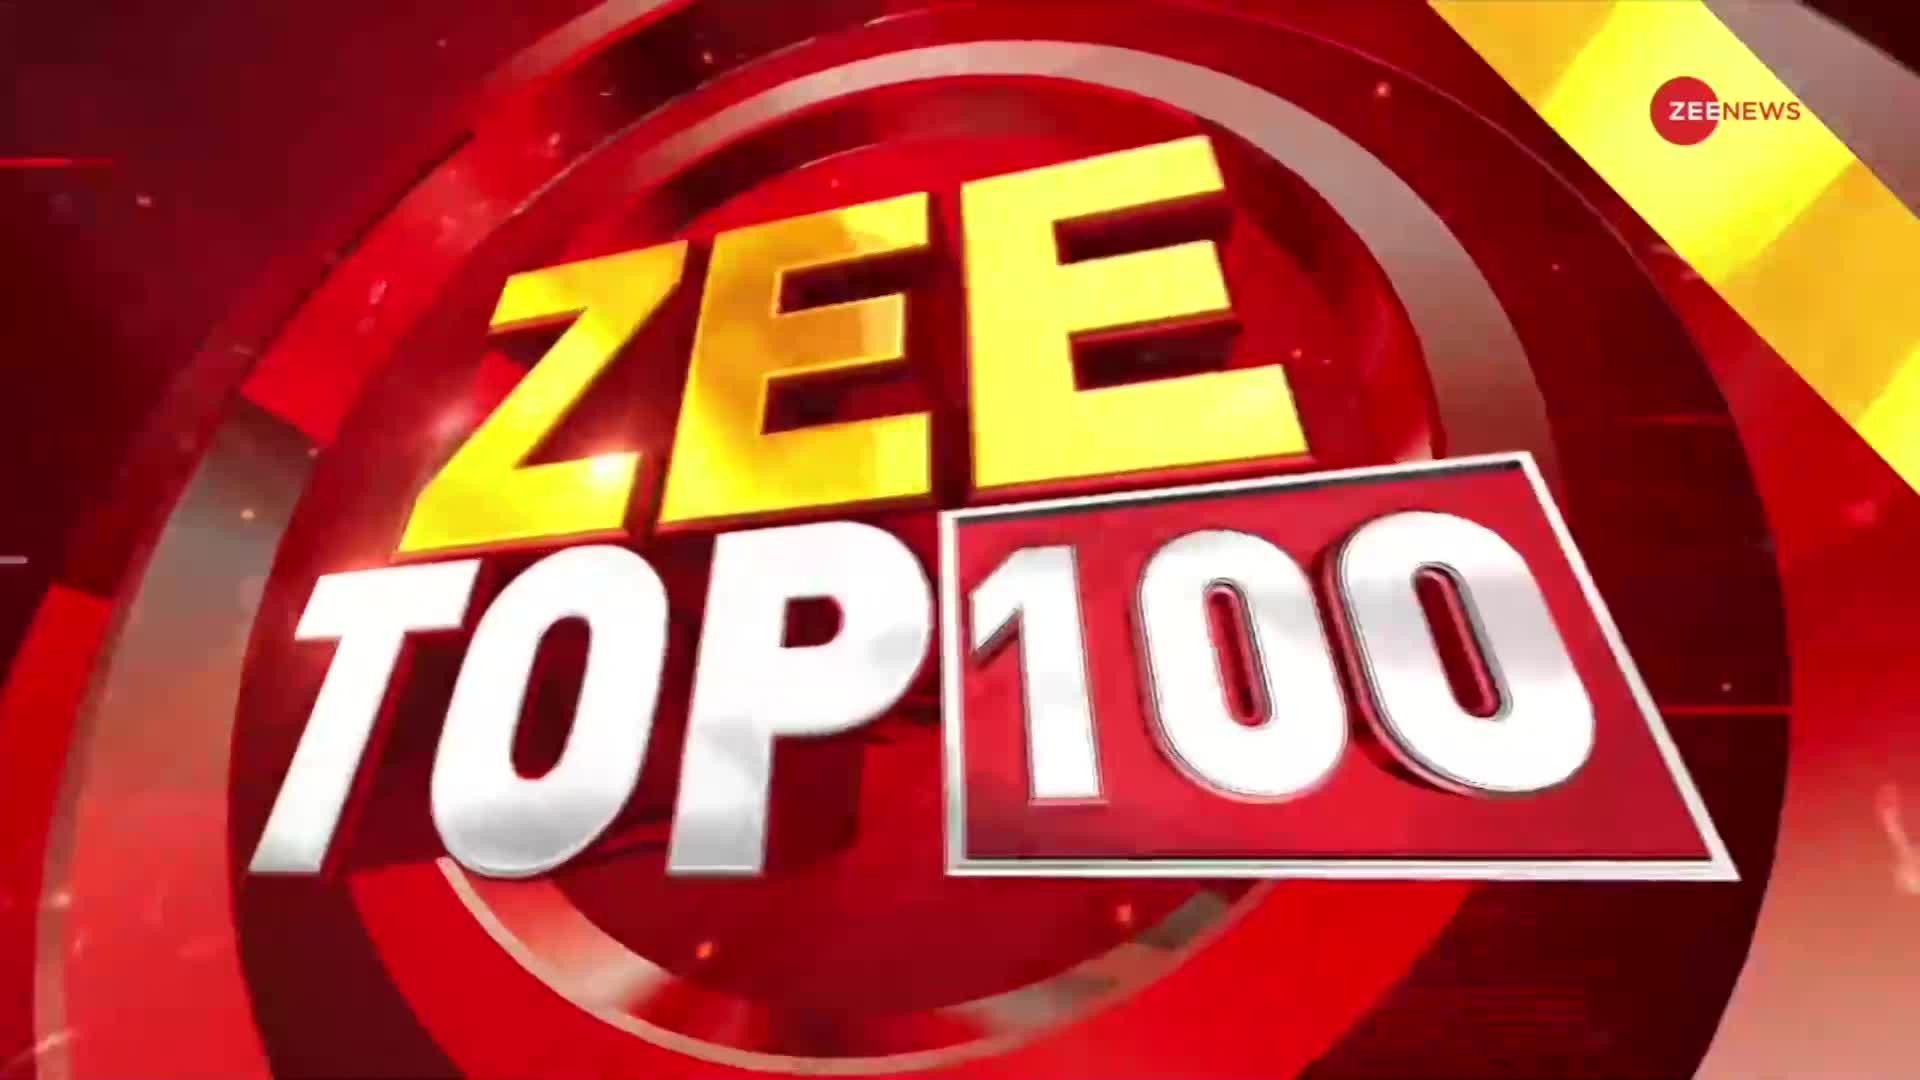 Zee Top 100: केंद्रीय मंत्री Pralhad Joshi का बड़ा बयान, 'ये Congress ओरिजिनल नहीं, Italian है'